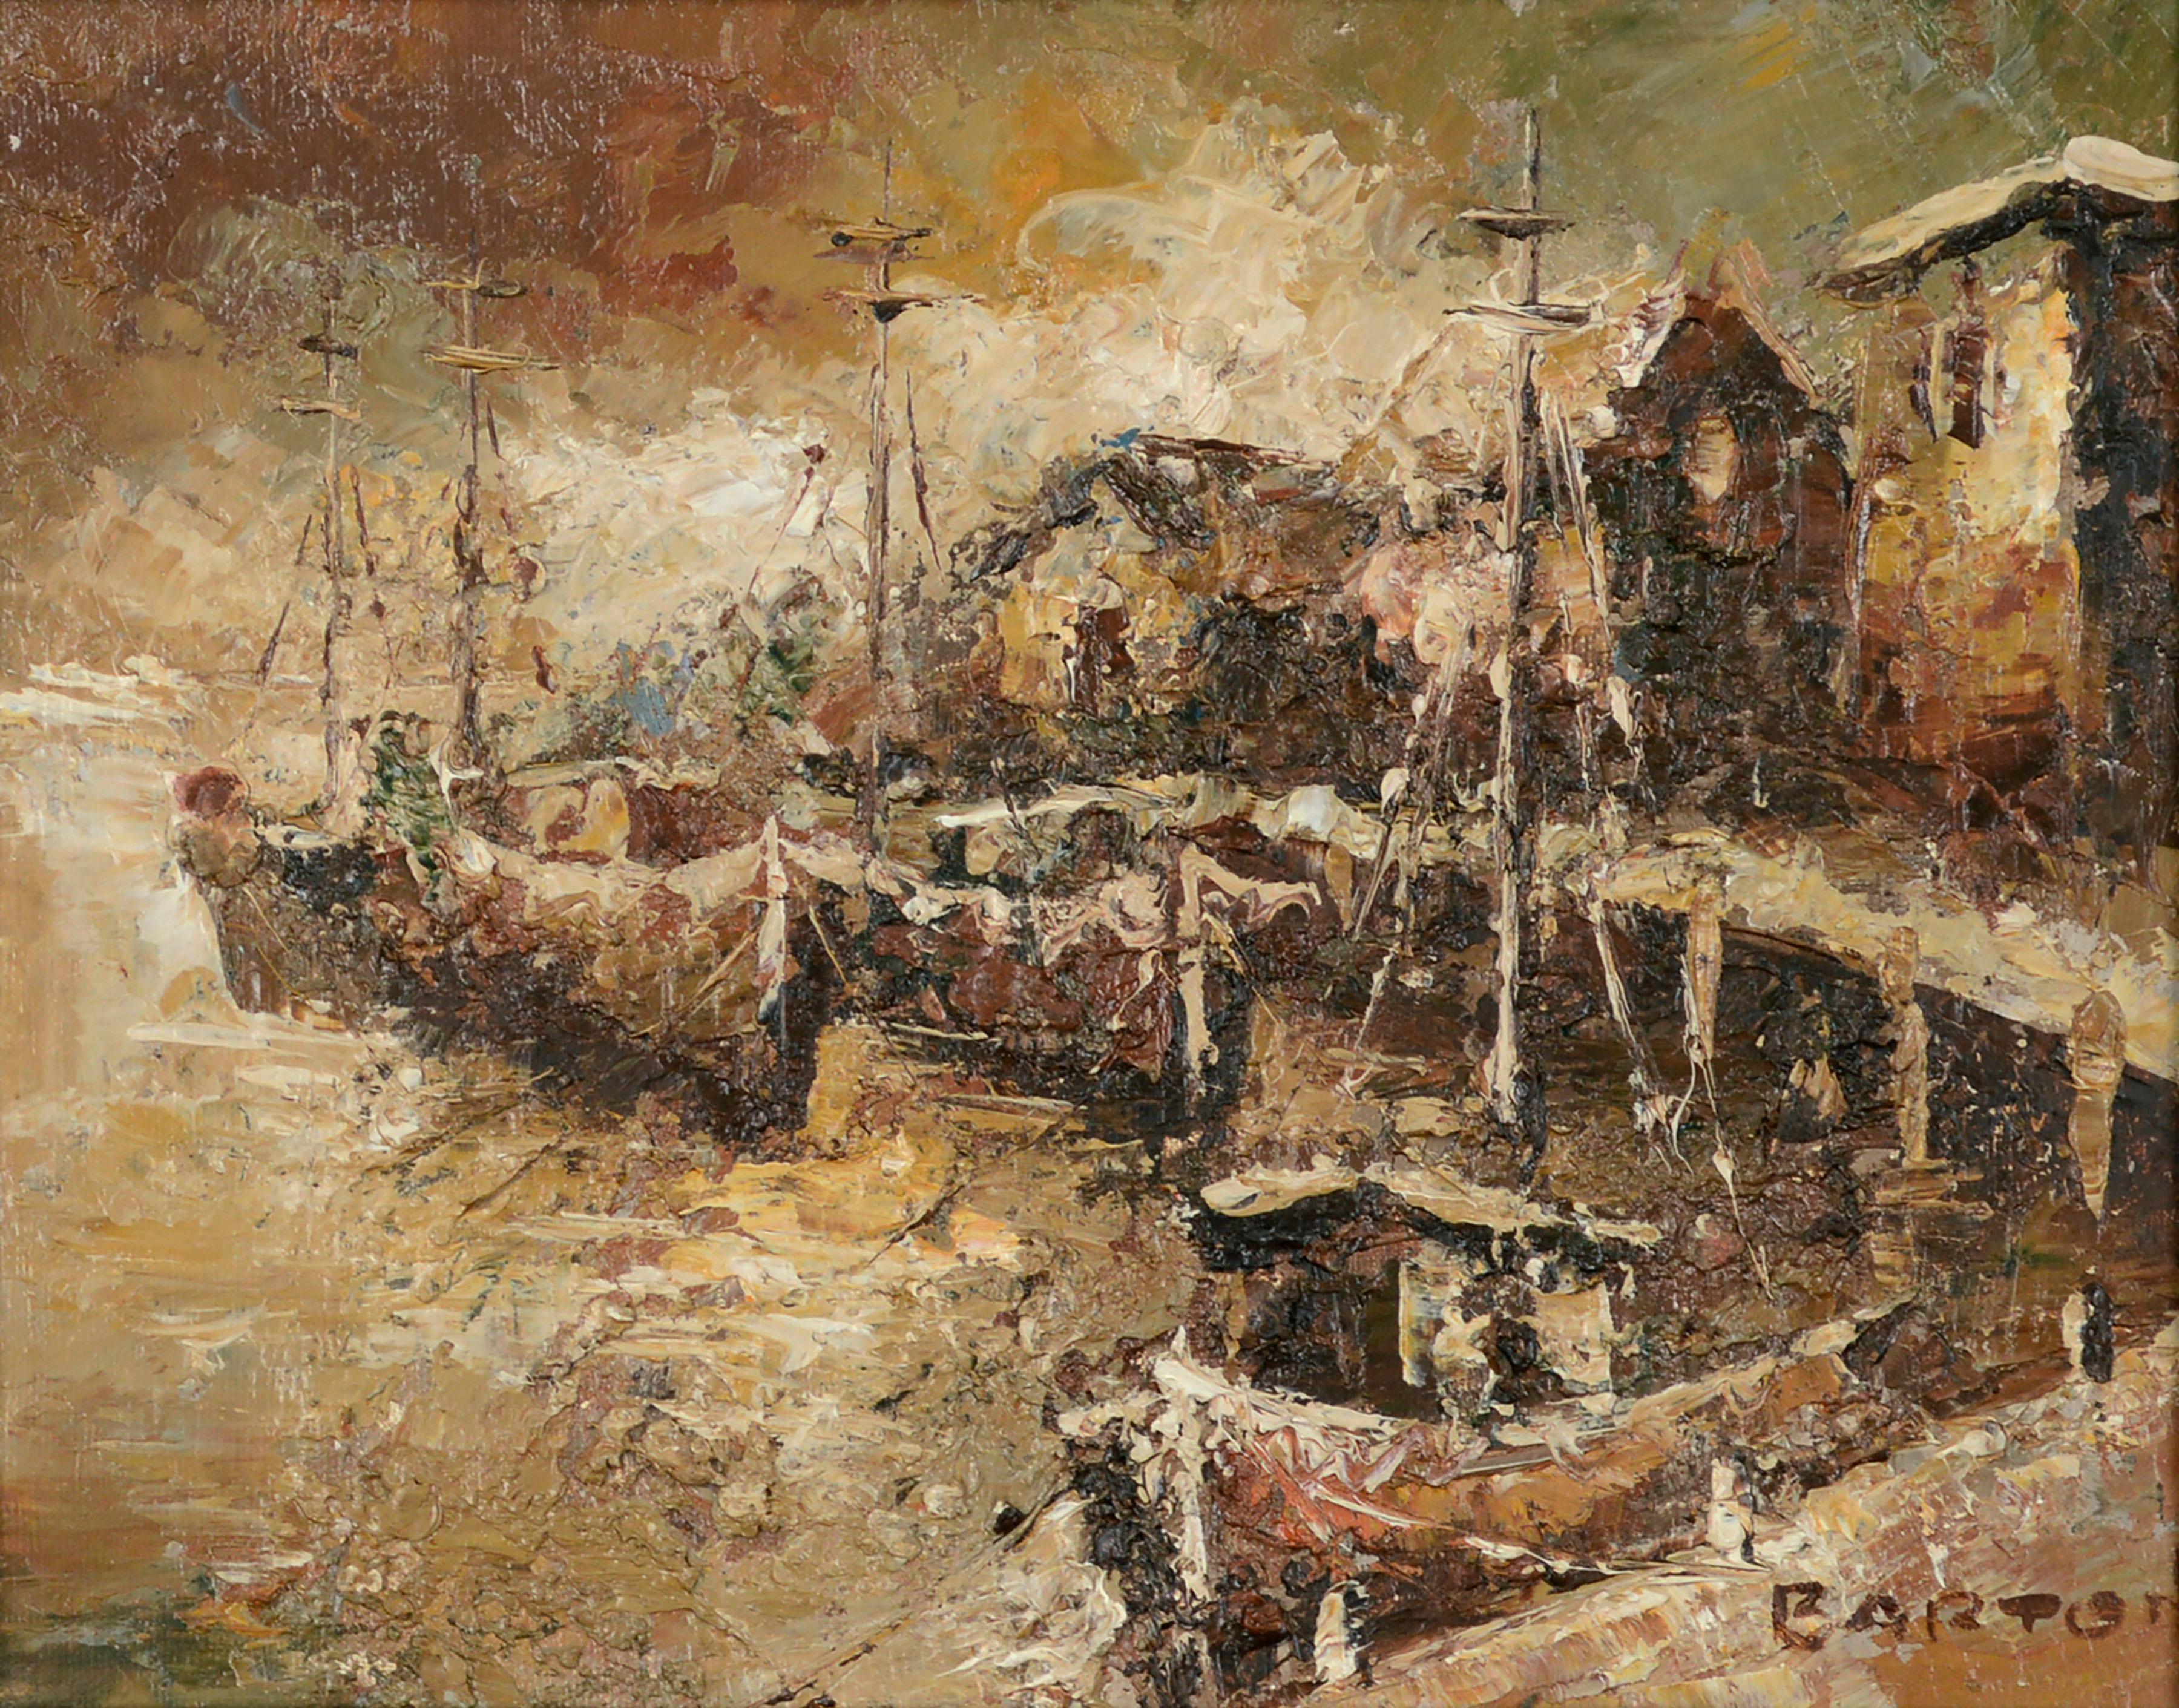 Fishing Boats at the Wharf - Mid Century Impasto Earthtone Landscape  - Painting by Barton